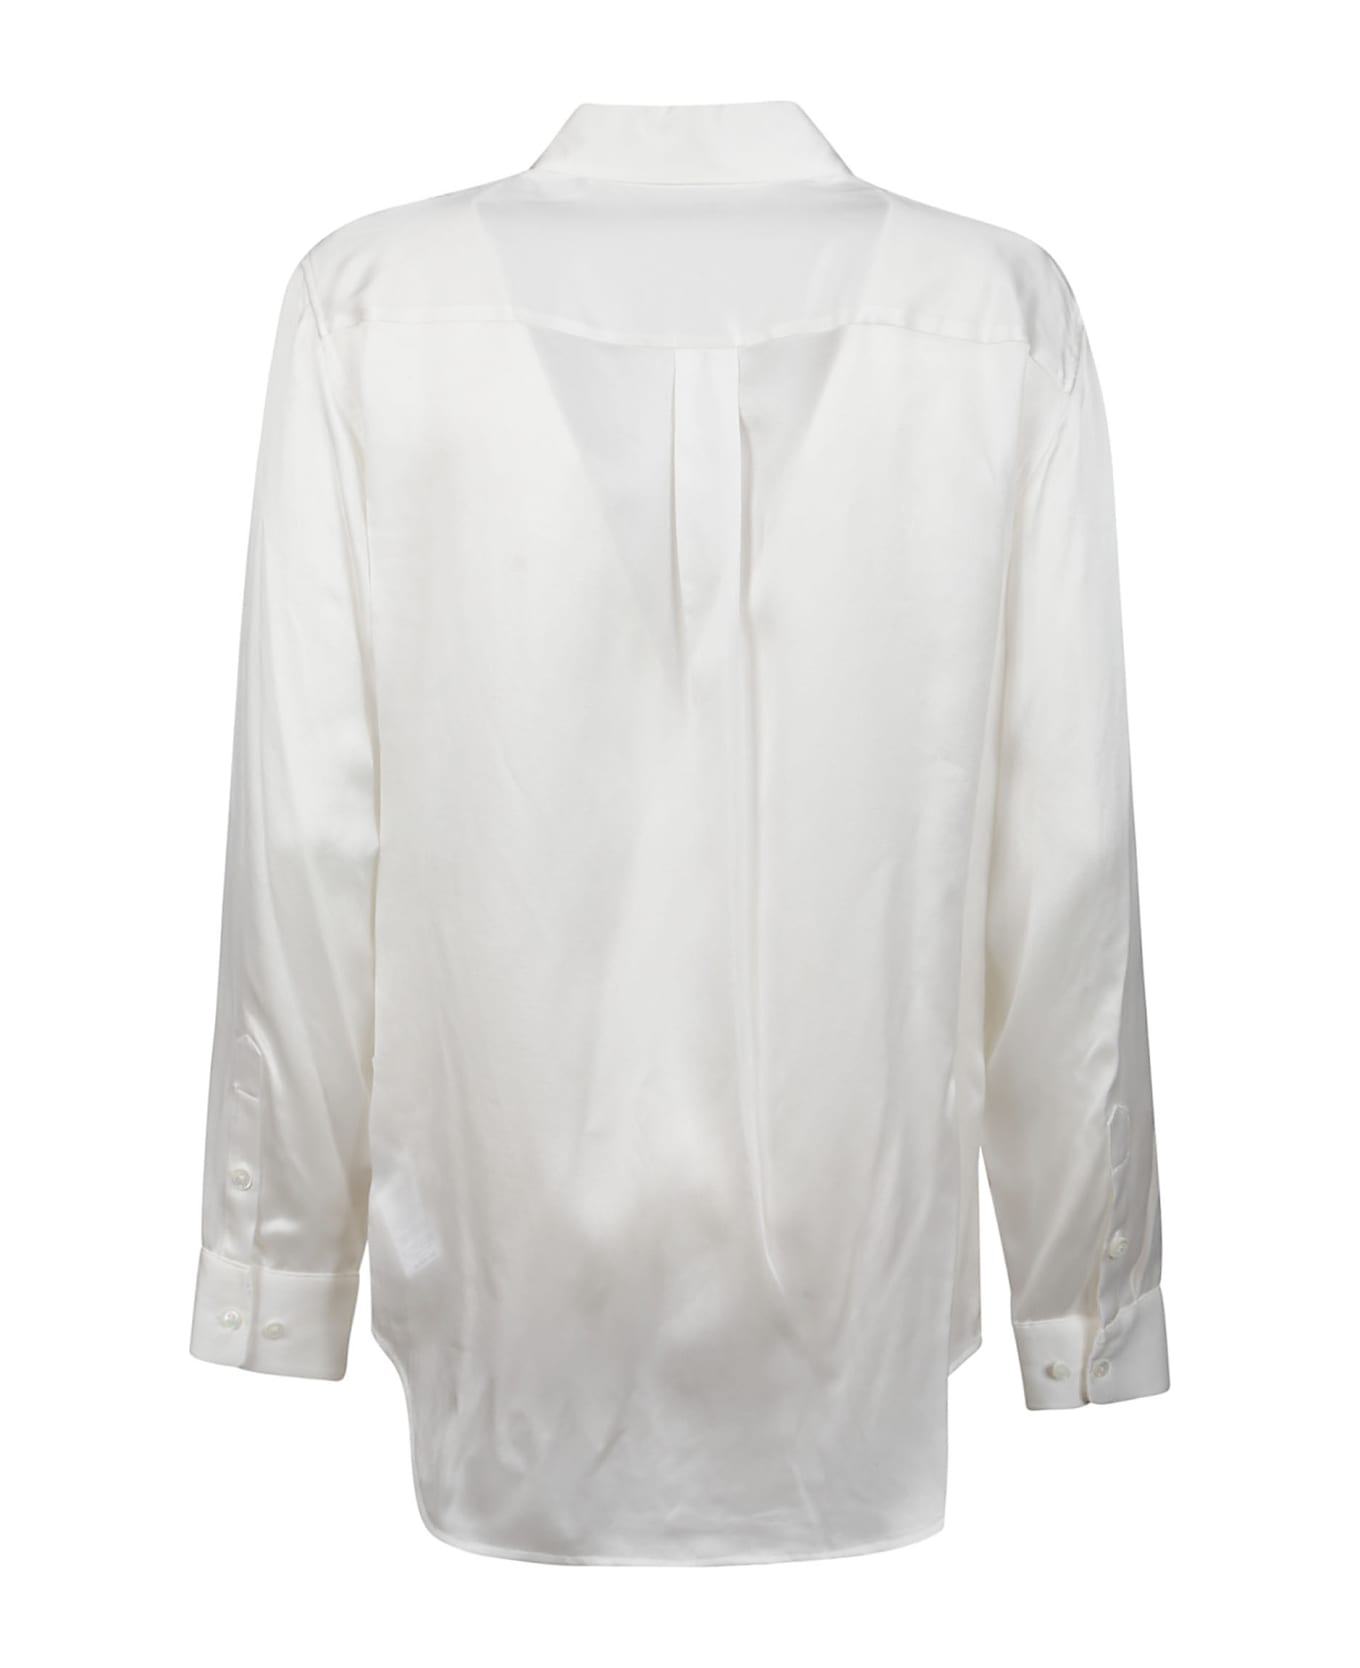 Equipment Signature Long Sleeve Shirt - Nature White シャツ